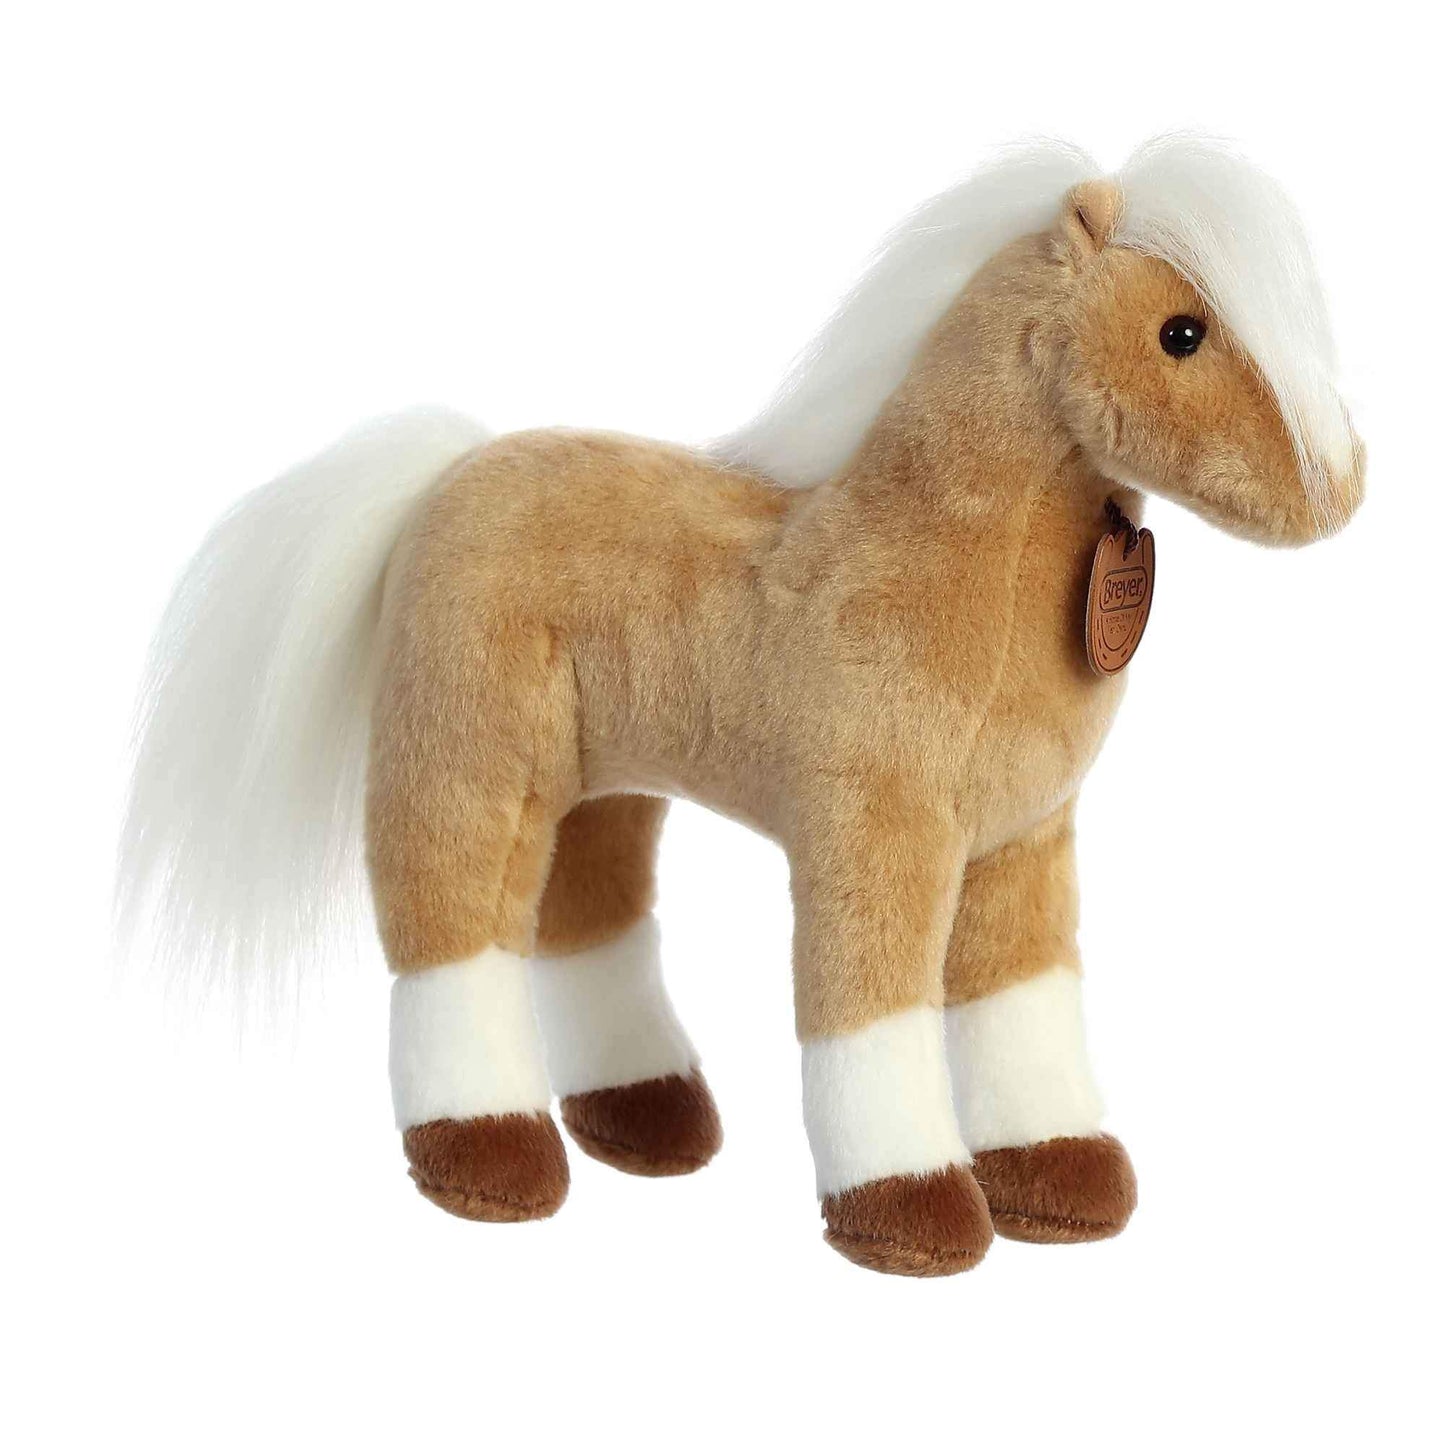 Breyer 11" Palomino Plush horse by Aurora